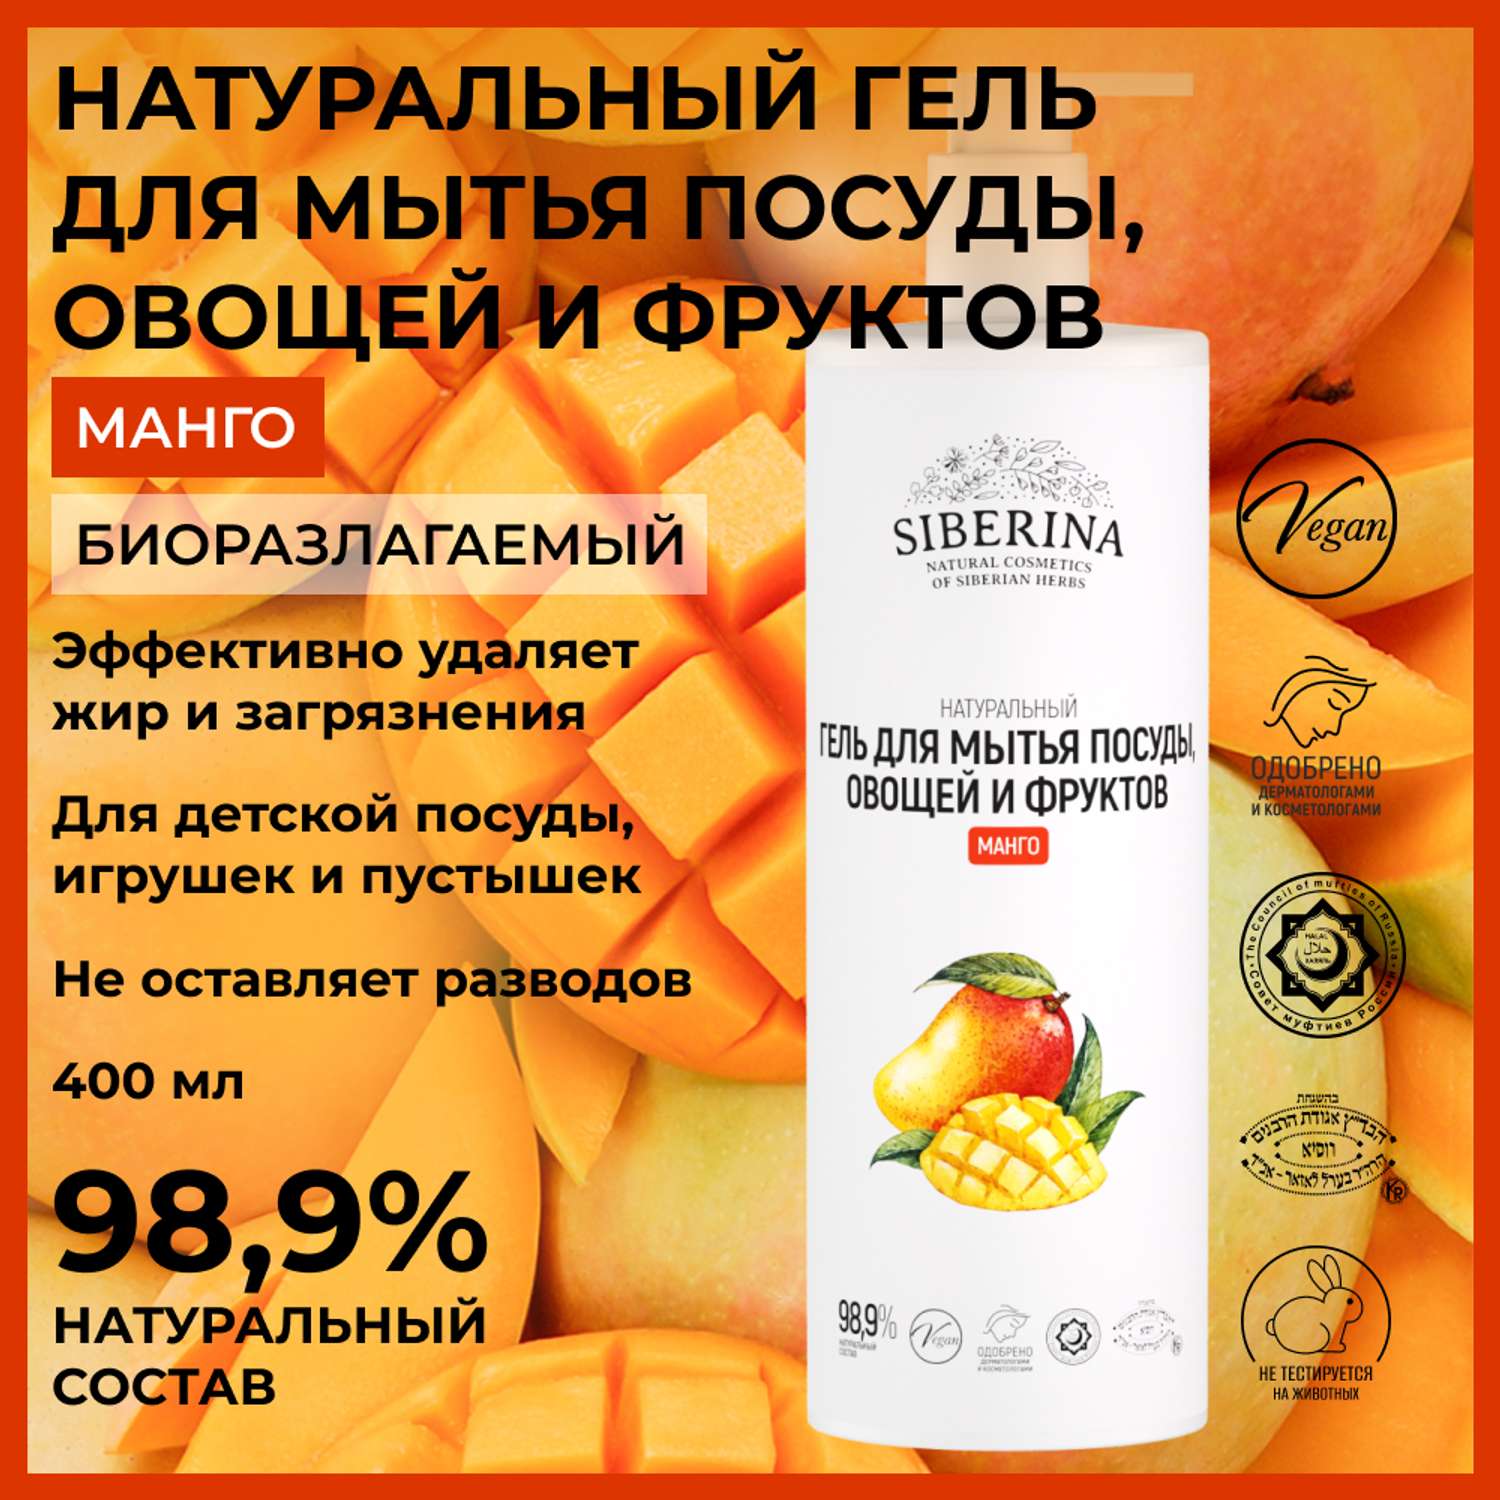 Гель для мытья посуды Siberina натуральный «Манго» овощей и фруктов 400 мл - фото 2